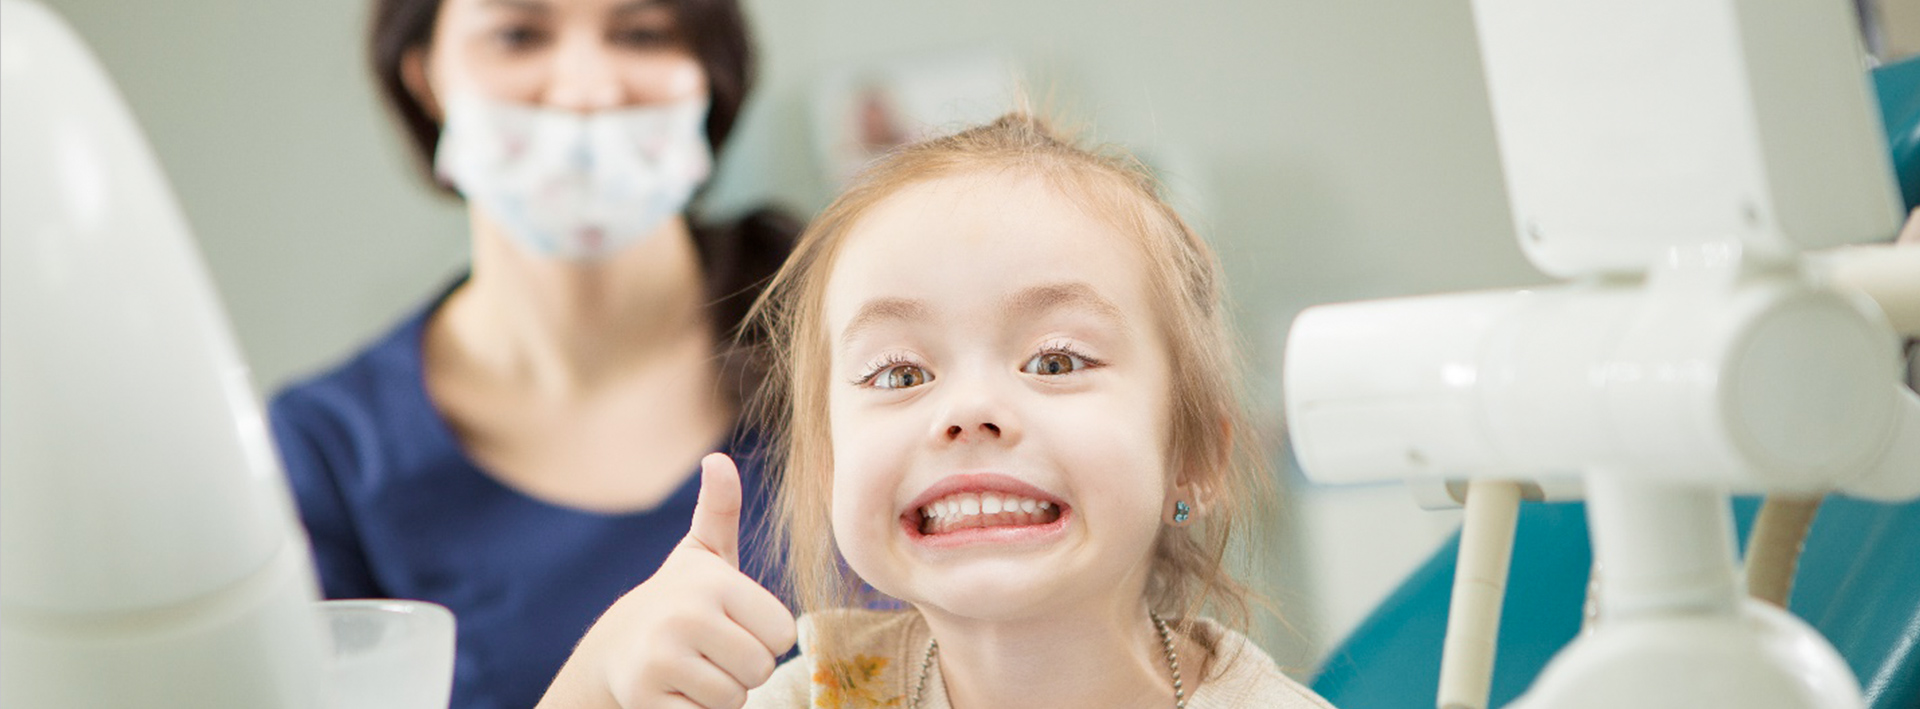 Детская стоматология в томске бесплатно Снятие зубных отложений Томск Волгоградская